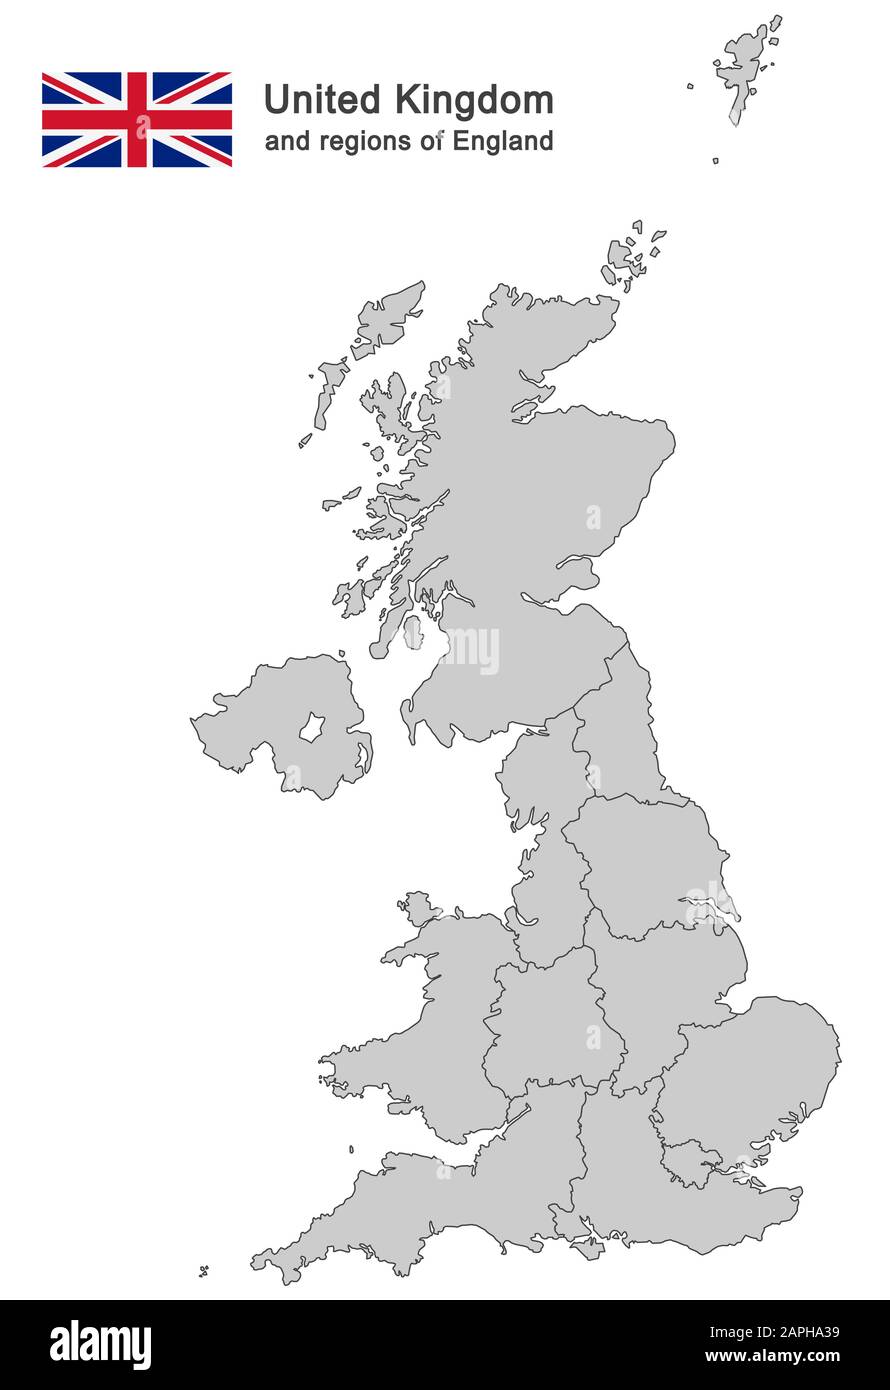 Europäisches Land Großbritannien und Regionen Englands Stock Vektor